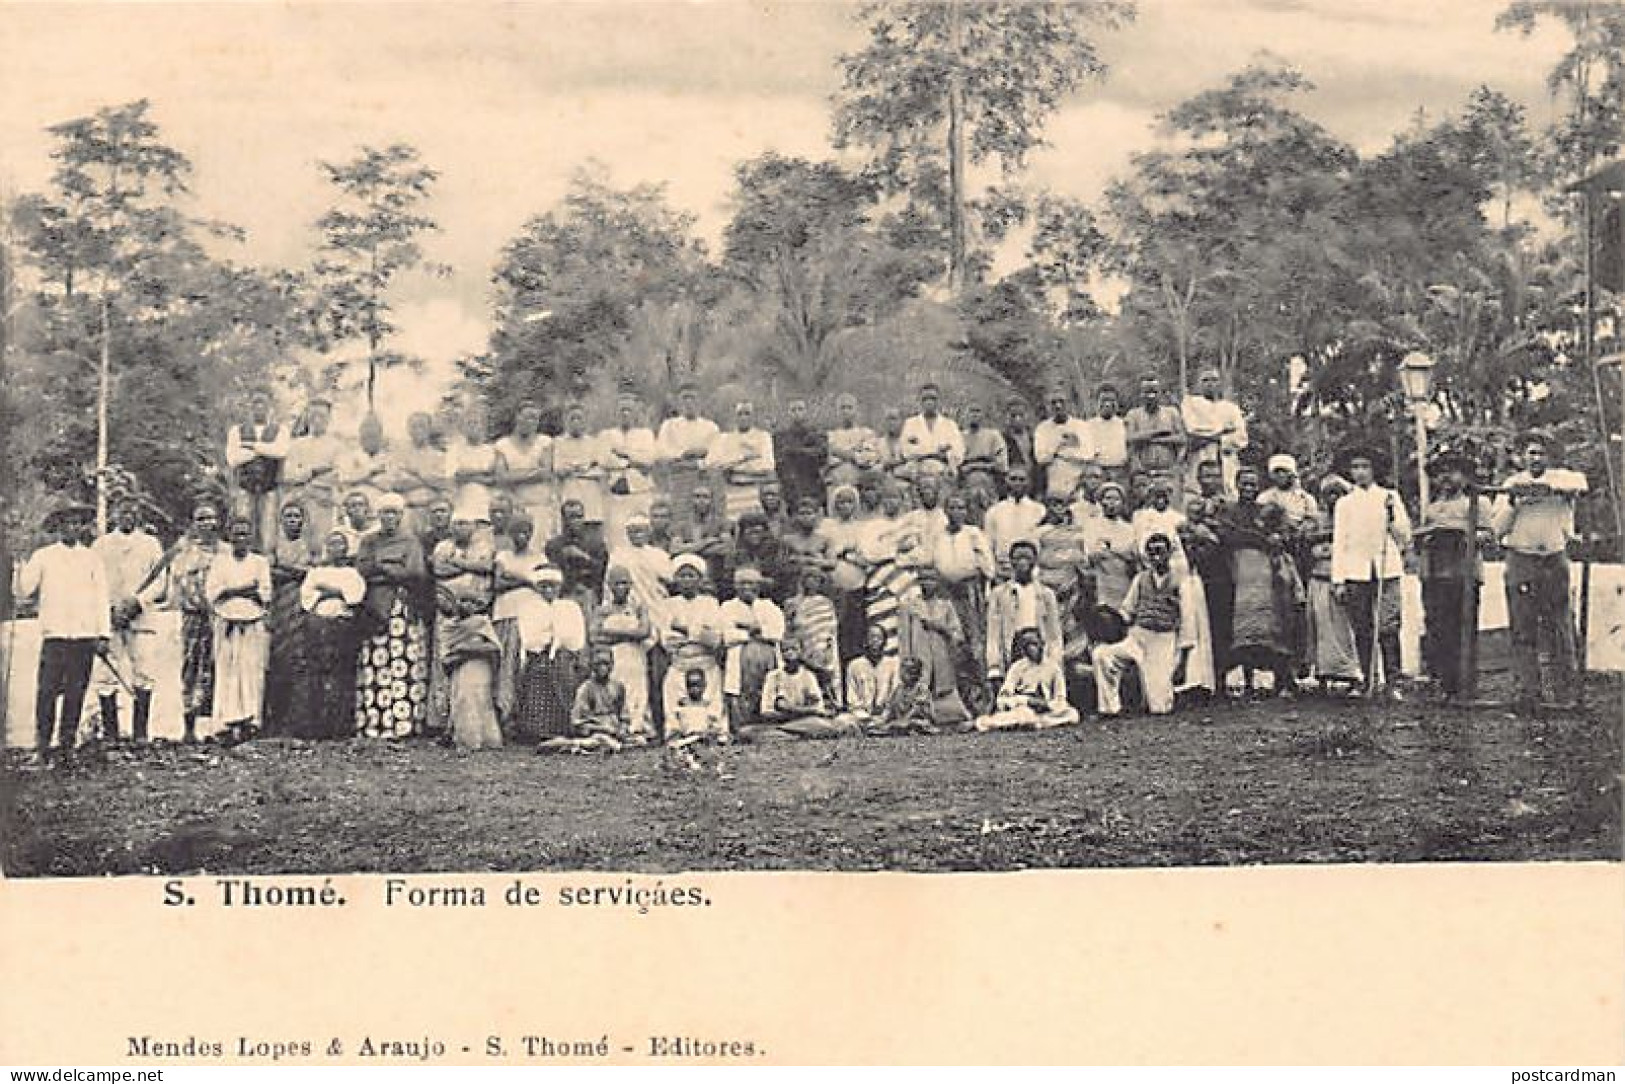 SAO TOME - Servants - Publ. Mendes. - Santo Tomé Y Príncipe